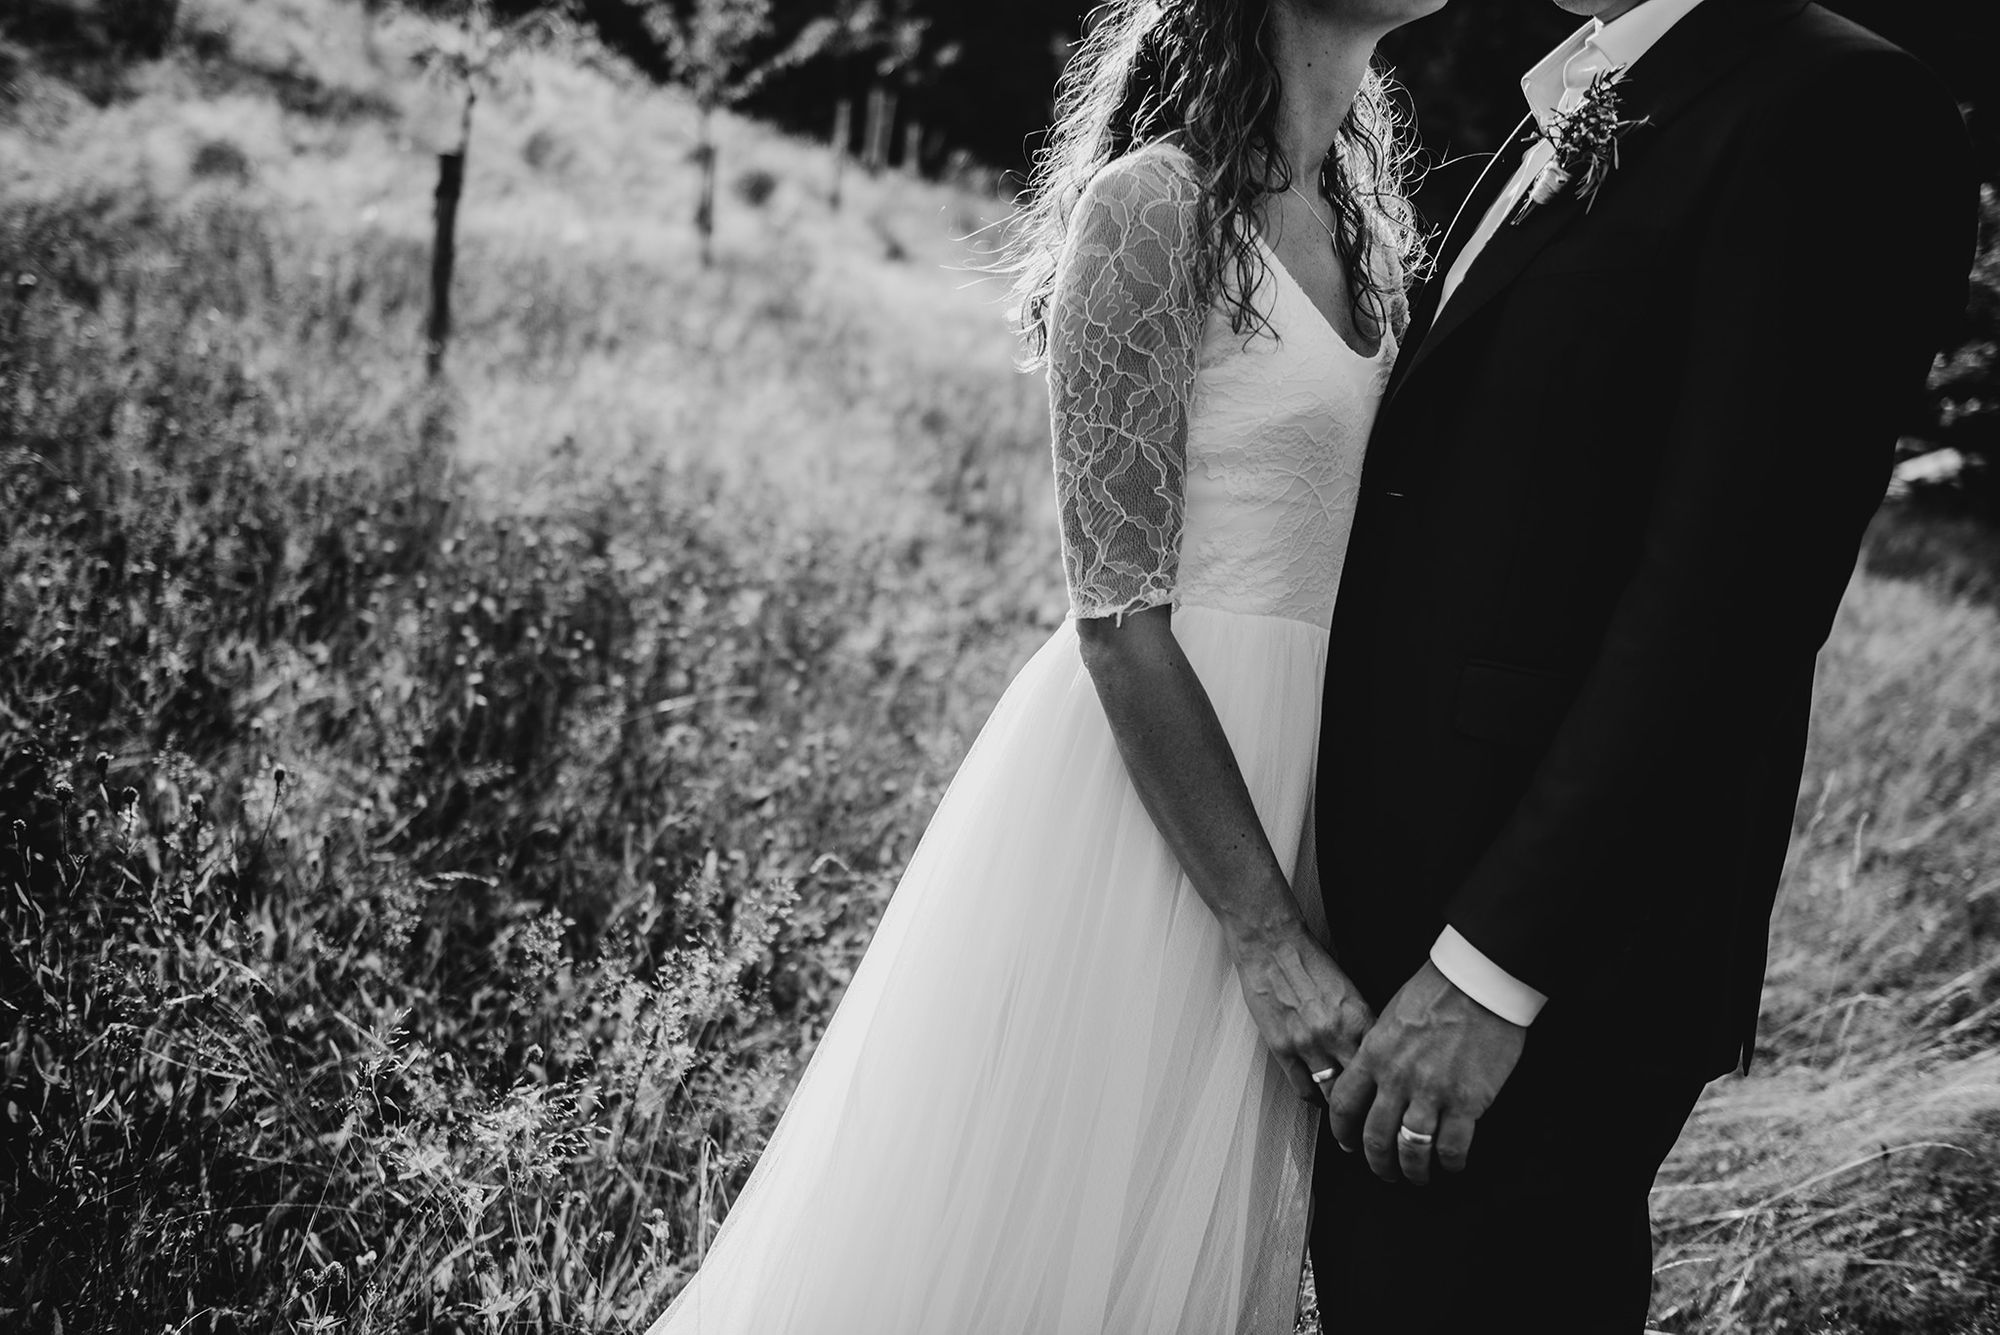 Schwarz-weiß-Aufnahme eines Brautpaares.